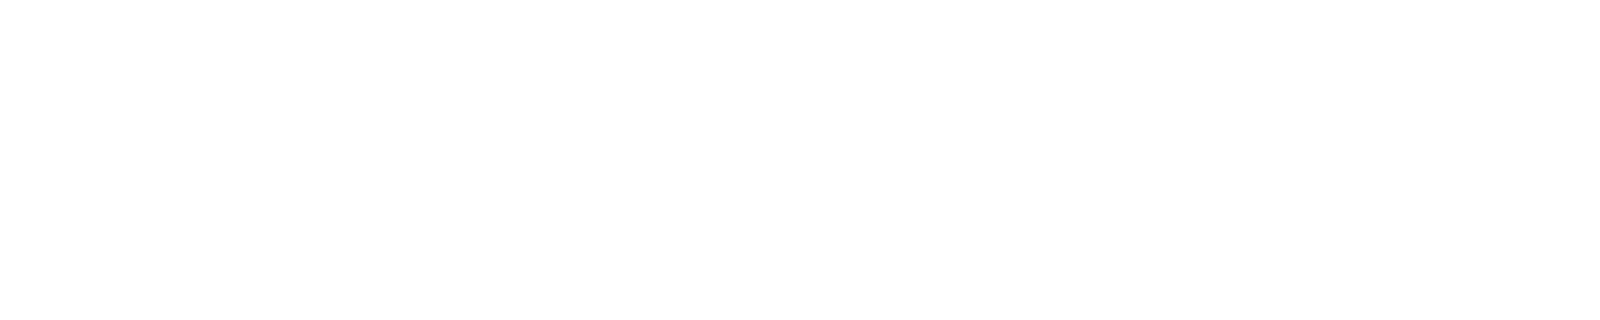 Rivian logo large for dark backgrounds (transparent PNG)